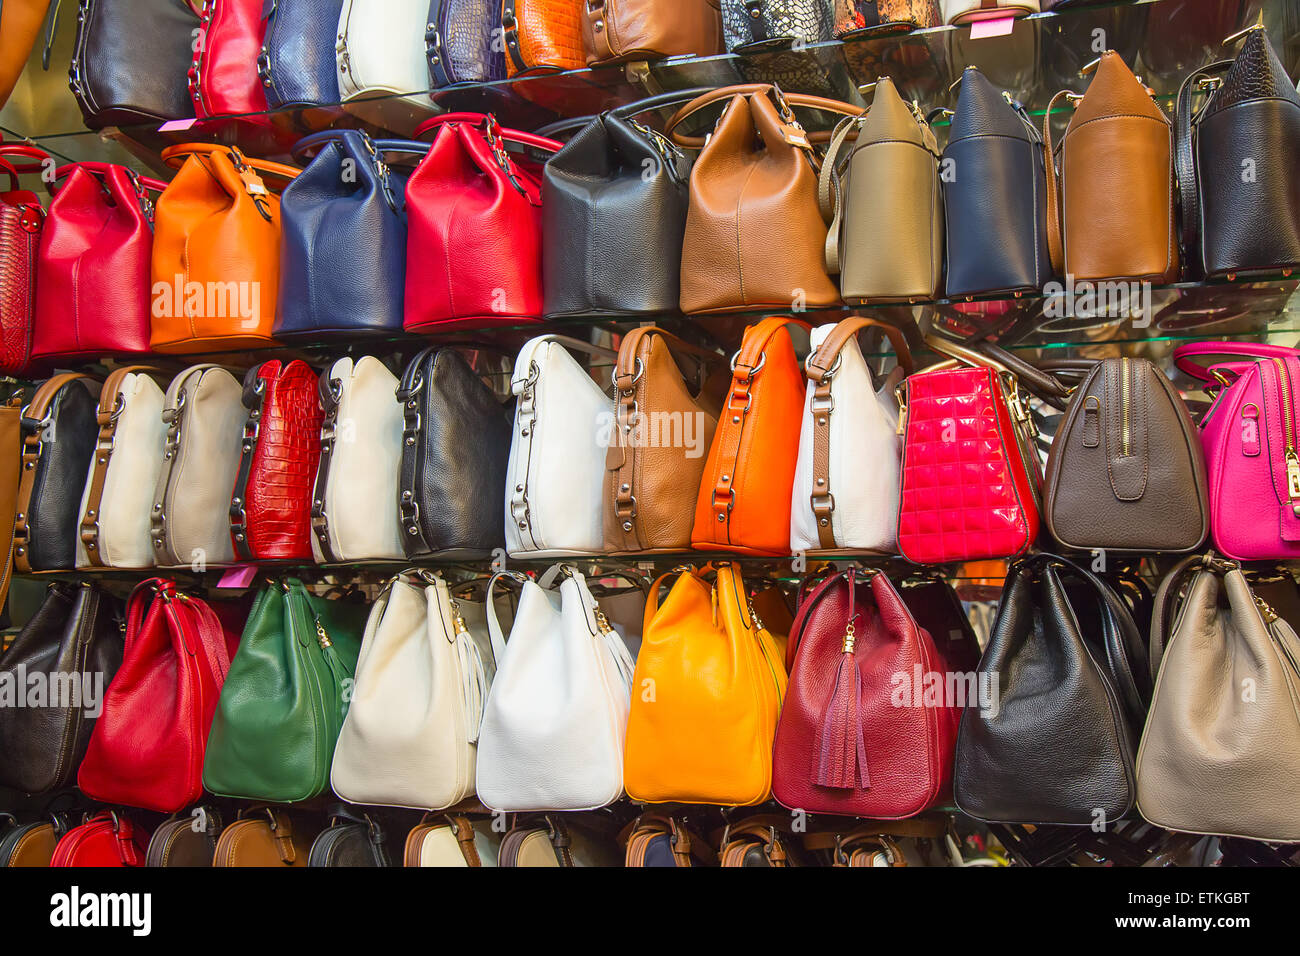 Istanbul Türkei nachgemachte Tasche Taschen Louis Vuitton Stockfotografie -  Alamy